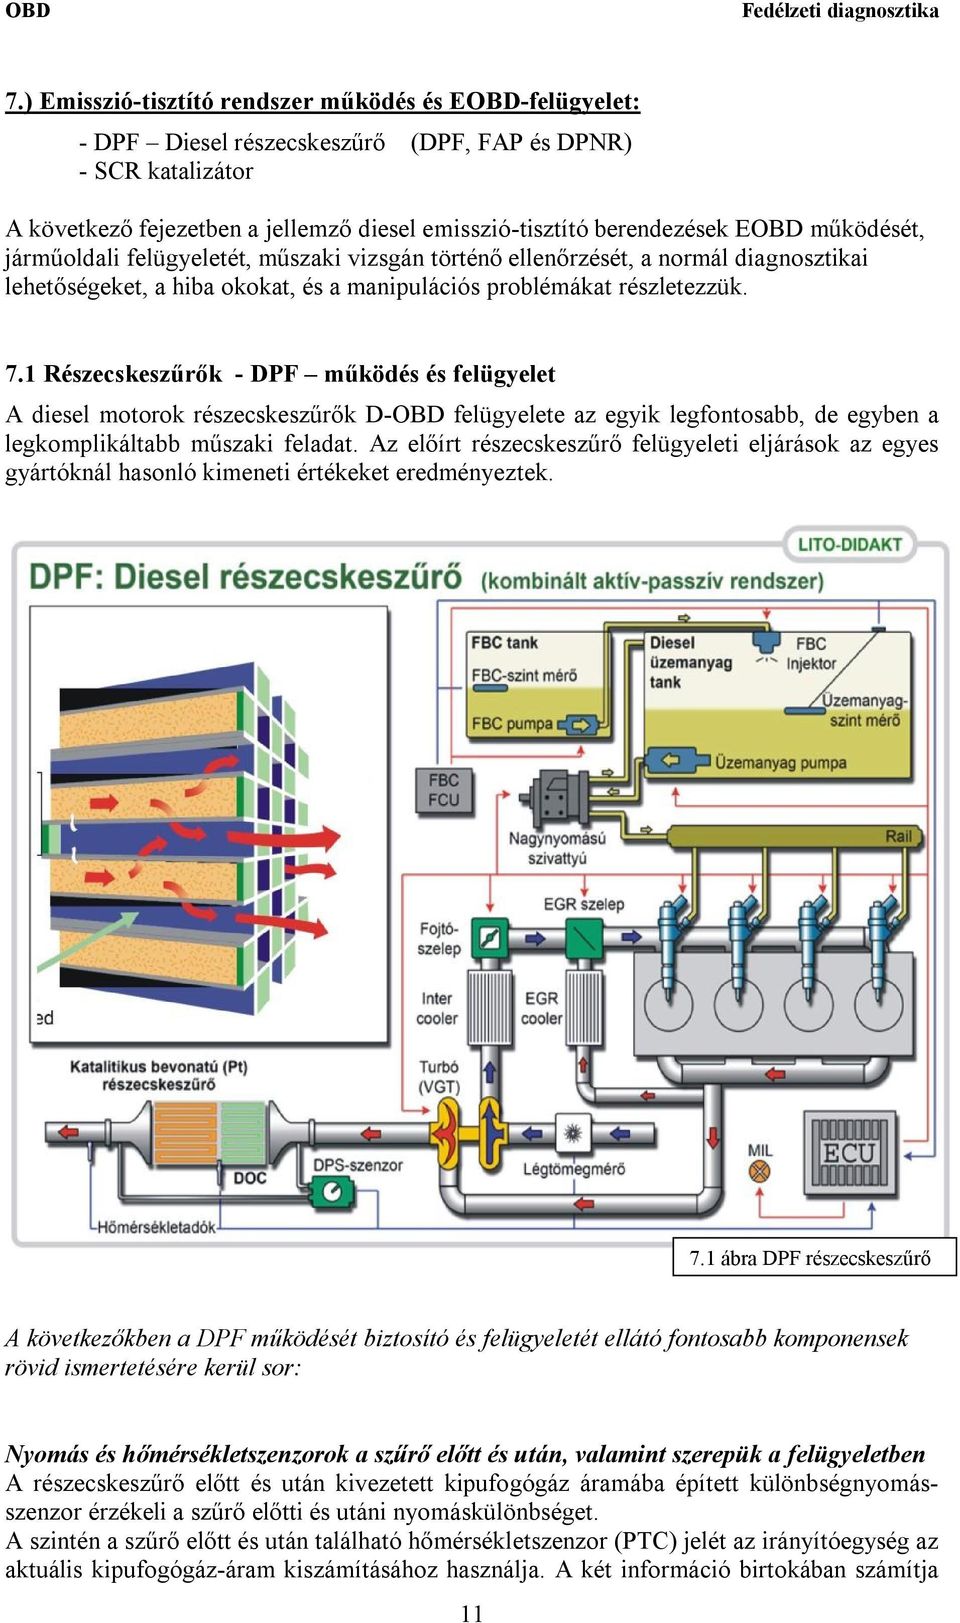 1 Részecskeszűrők - DPF működés és felügyelet A diesel motorok részecskeszűrők D-OBD felügyelete az egyik legfontosabb, de egyben a legkomplikáltabb műszaki feladat.